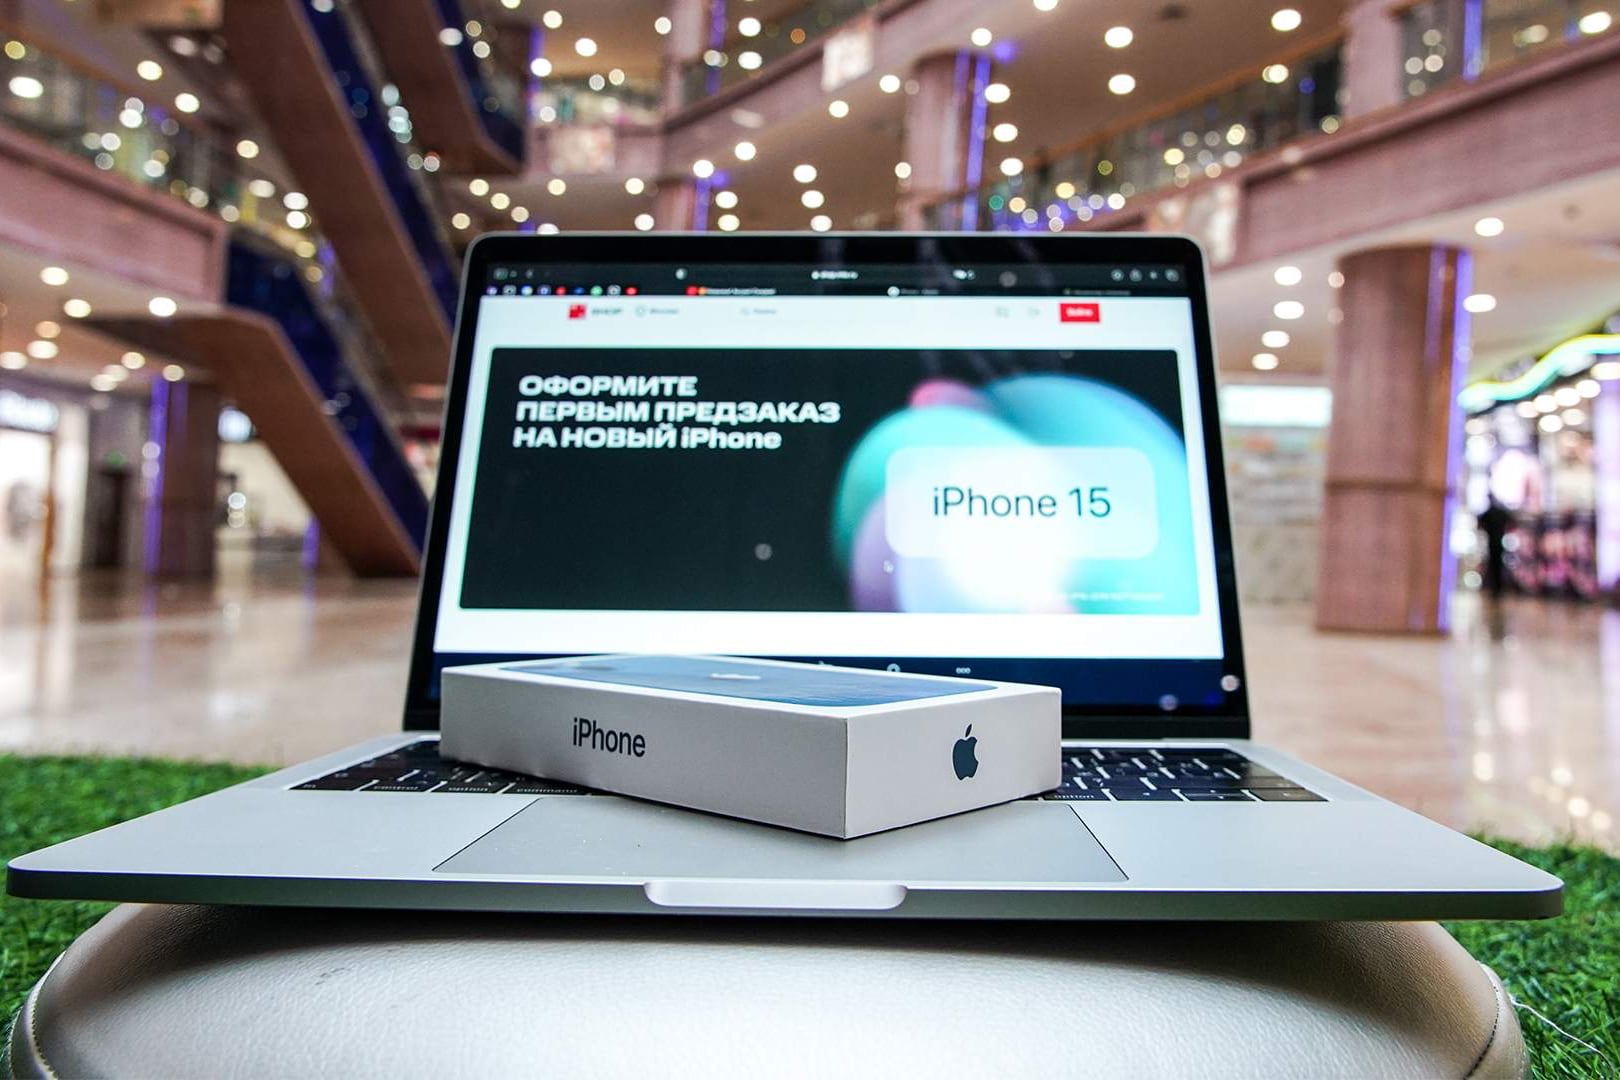 До презентации iPhone 15 ещё две недели, а на Авито уже доступны предзаказы. Цены доходят до 1 млн рублей